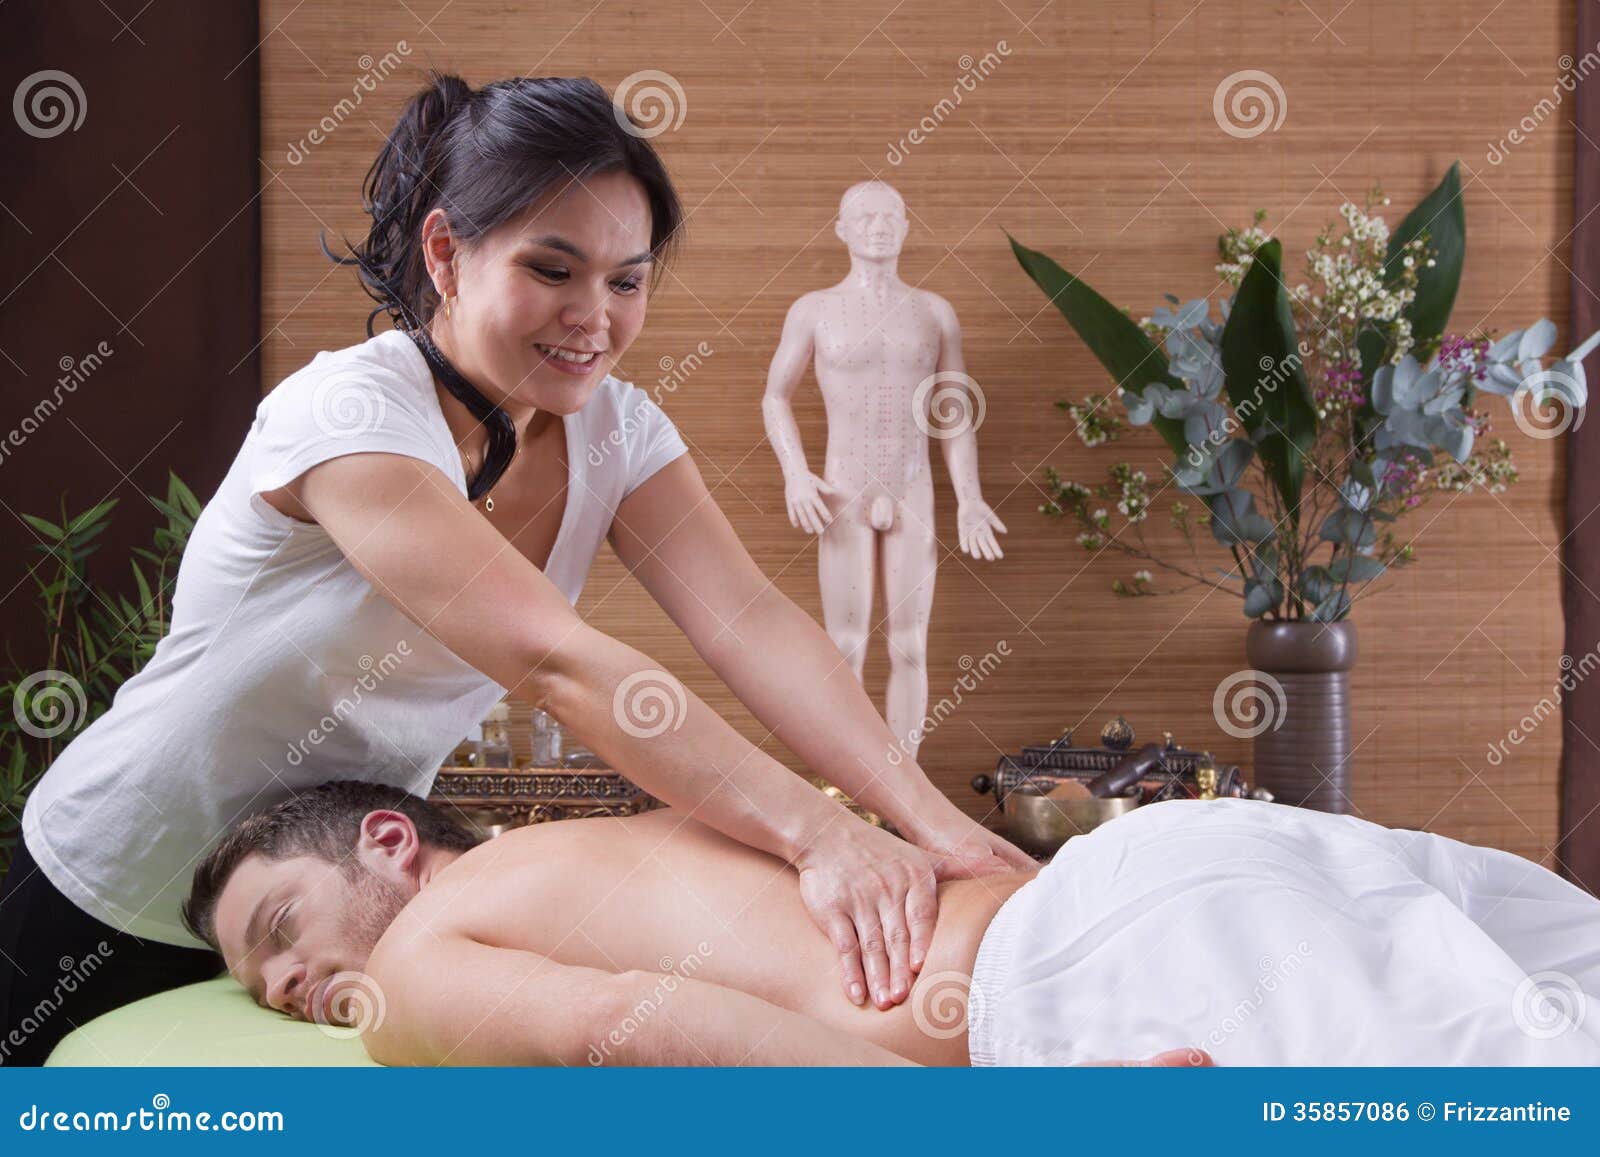 тайский массаж грудью что это такое фото 13